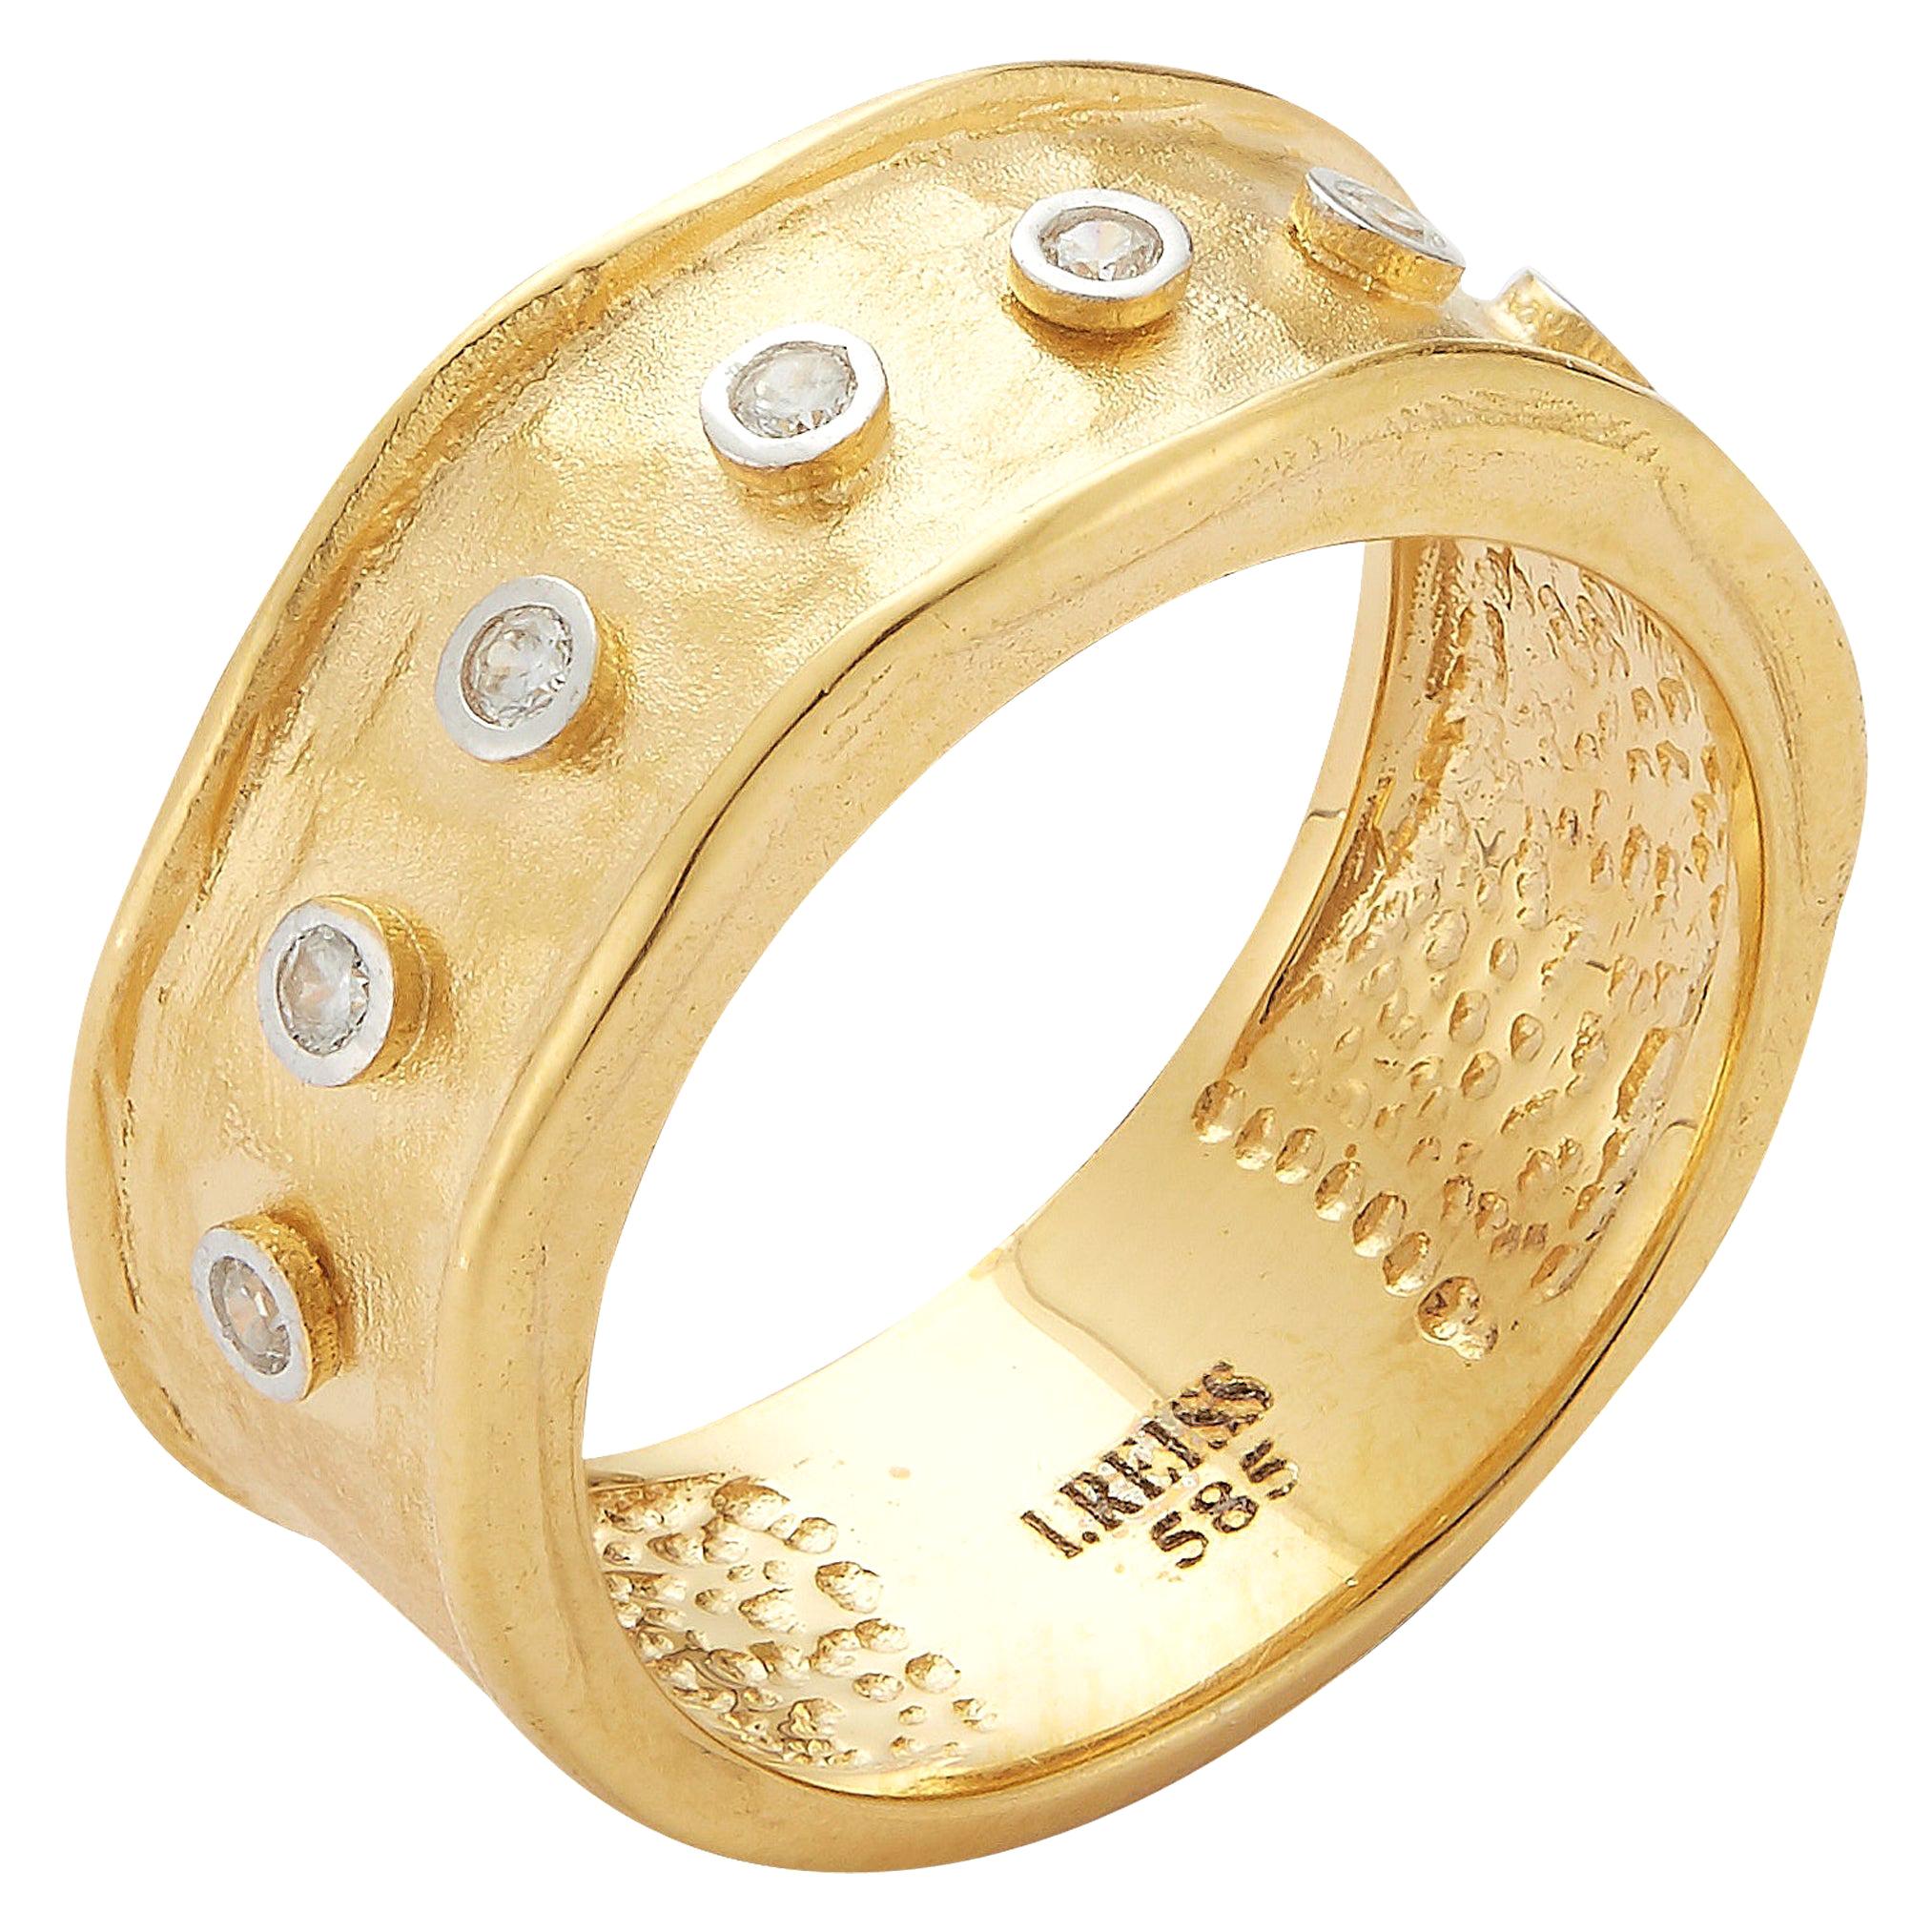 Handgefertigte, schmale, gehämmerte Ringe aus 14 Karat Gelbgold mit Diamanten in der Lünette